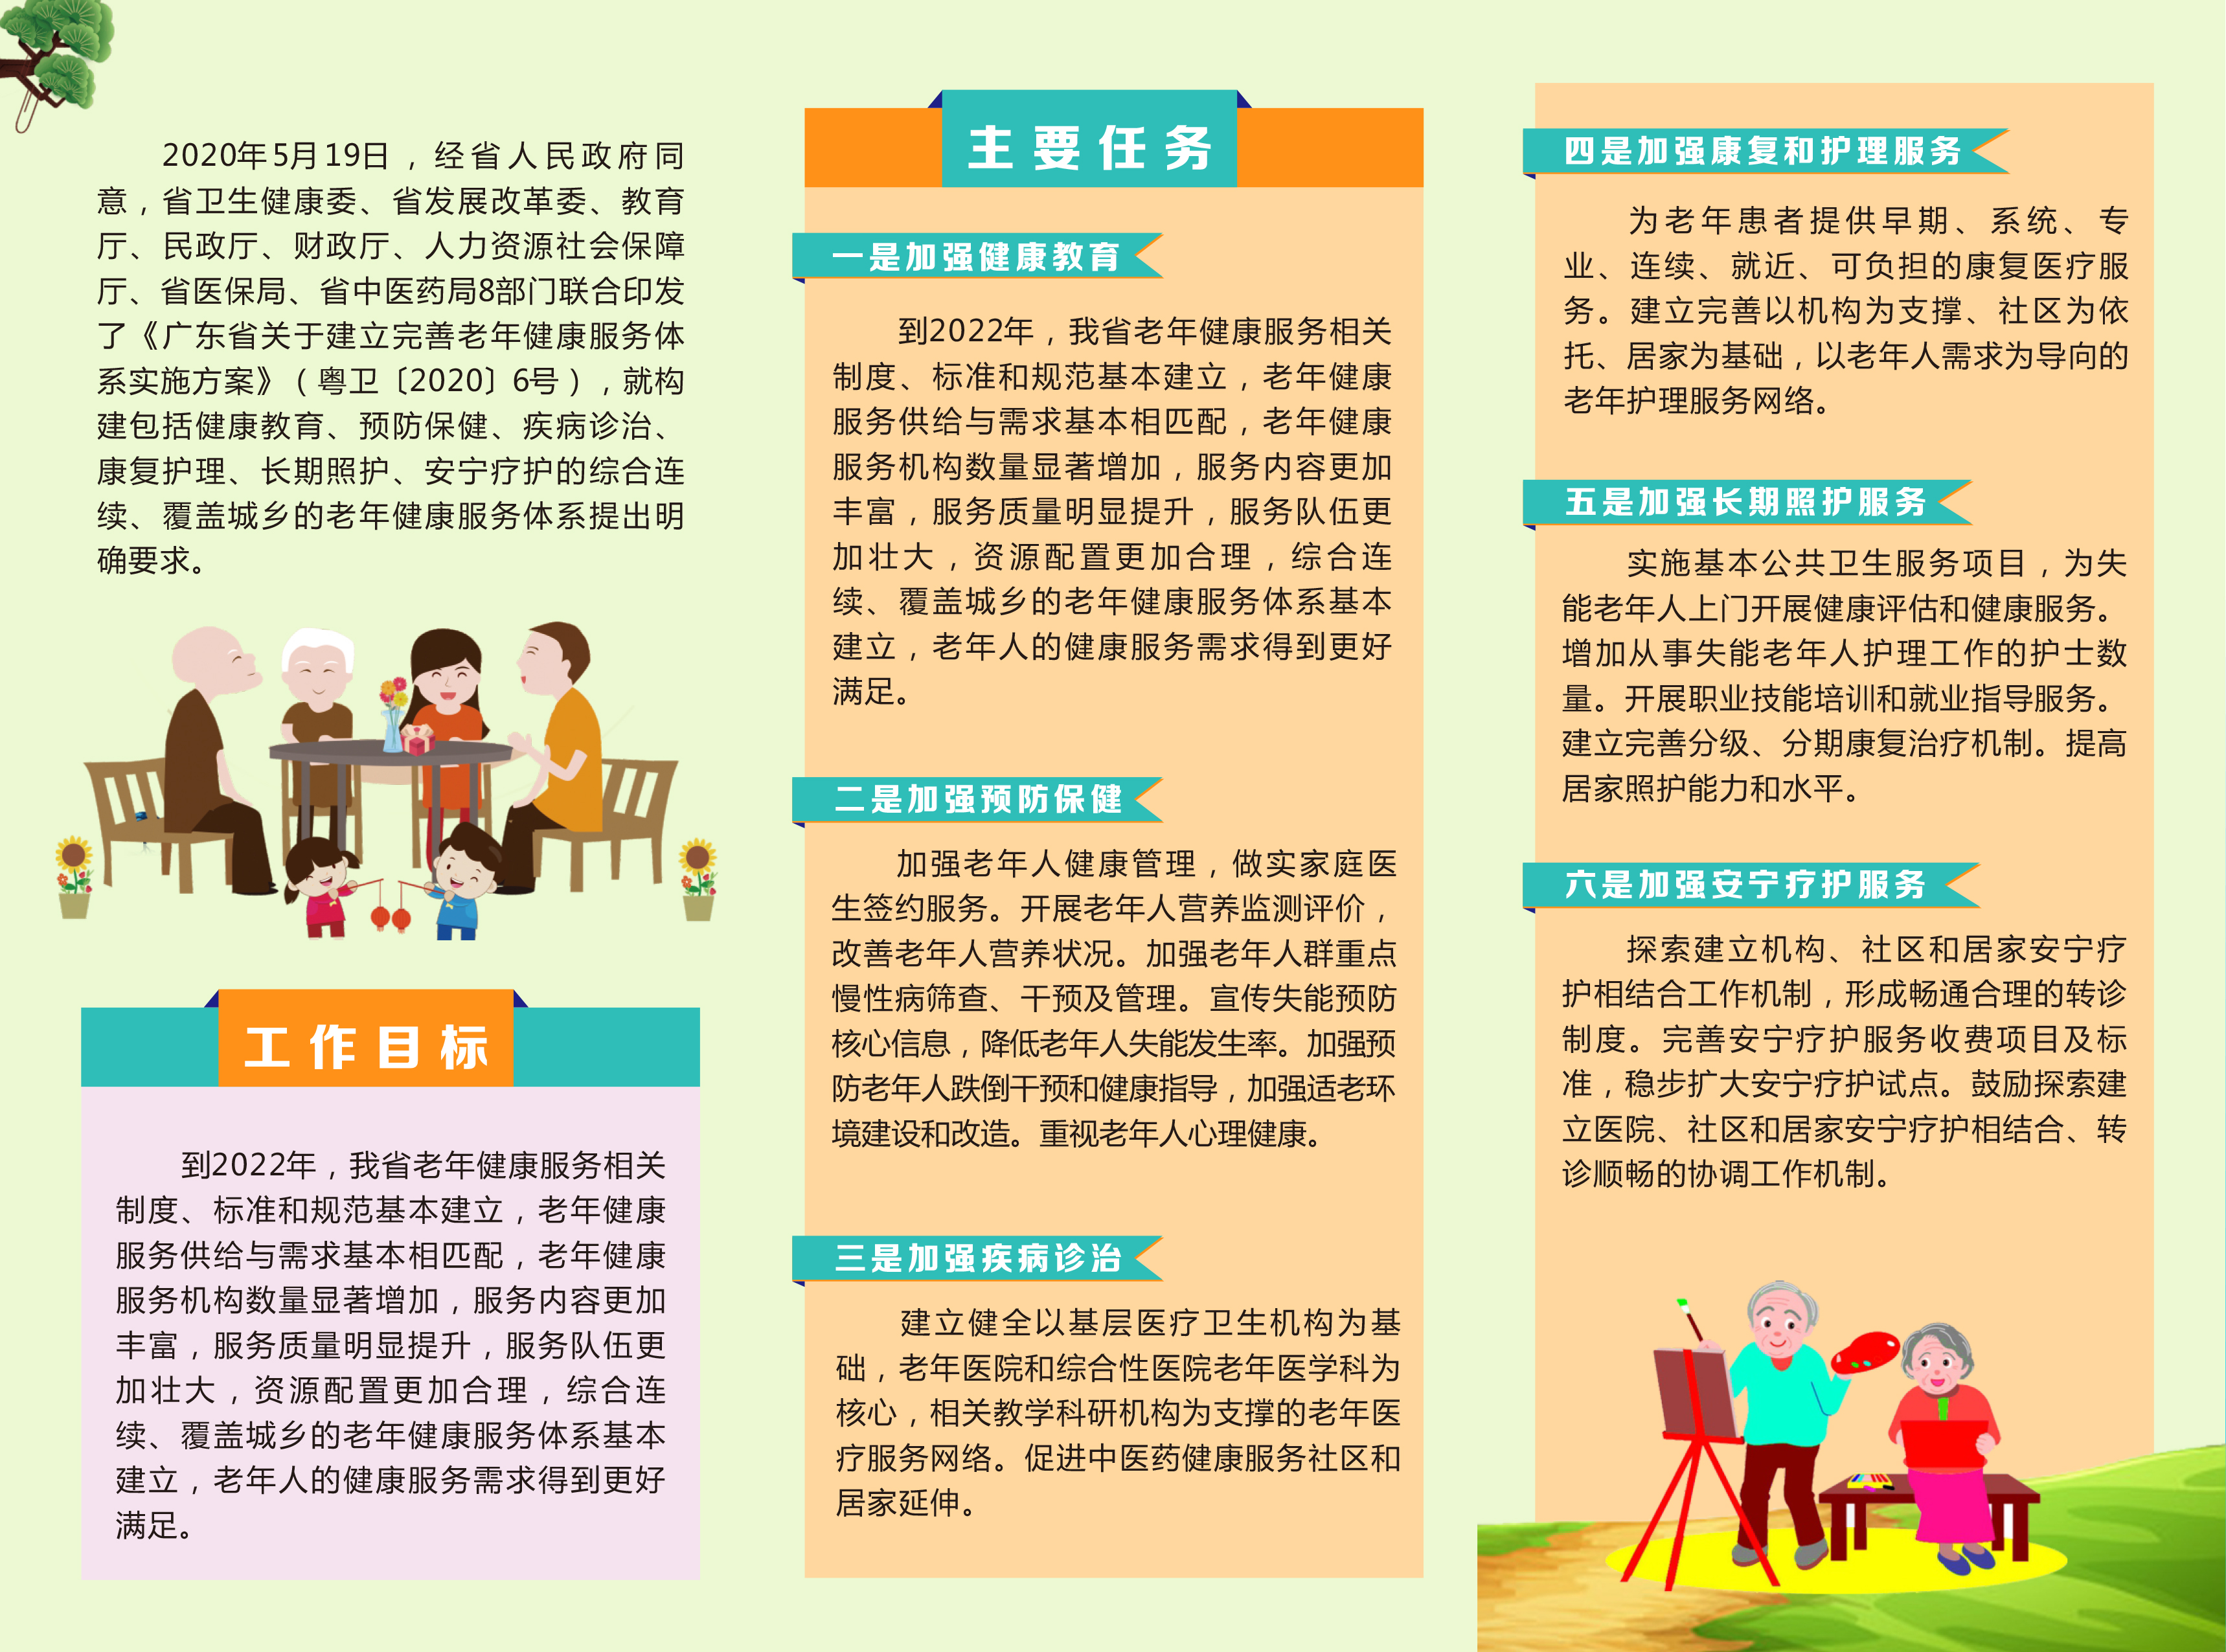 《广东省关于建立和完善老年健康服务体系实施方案》解读2.jpg